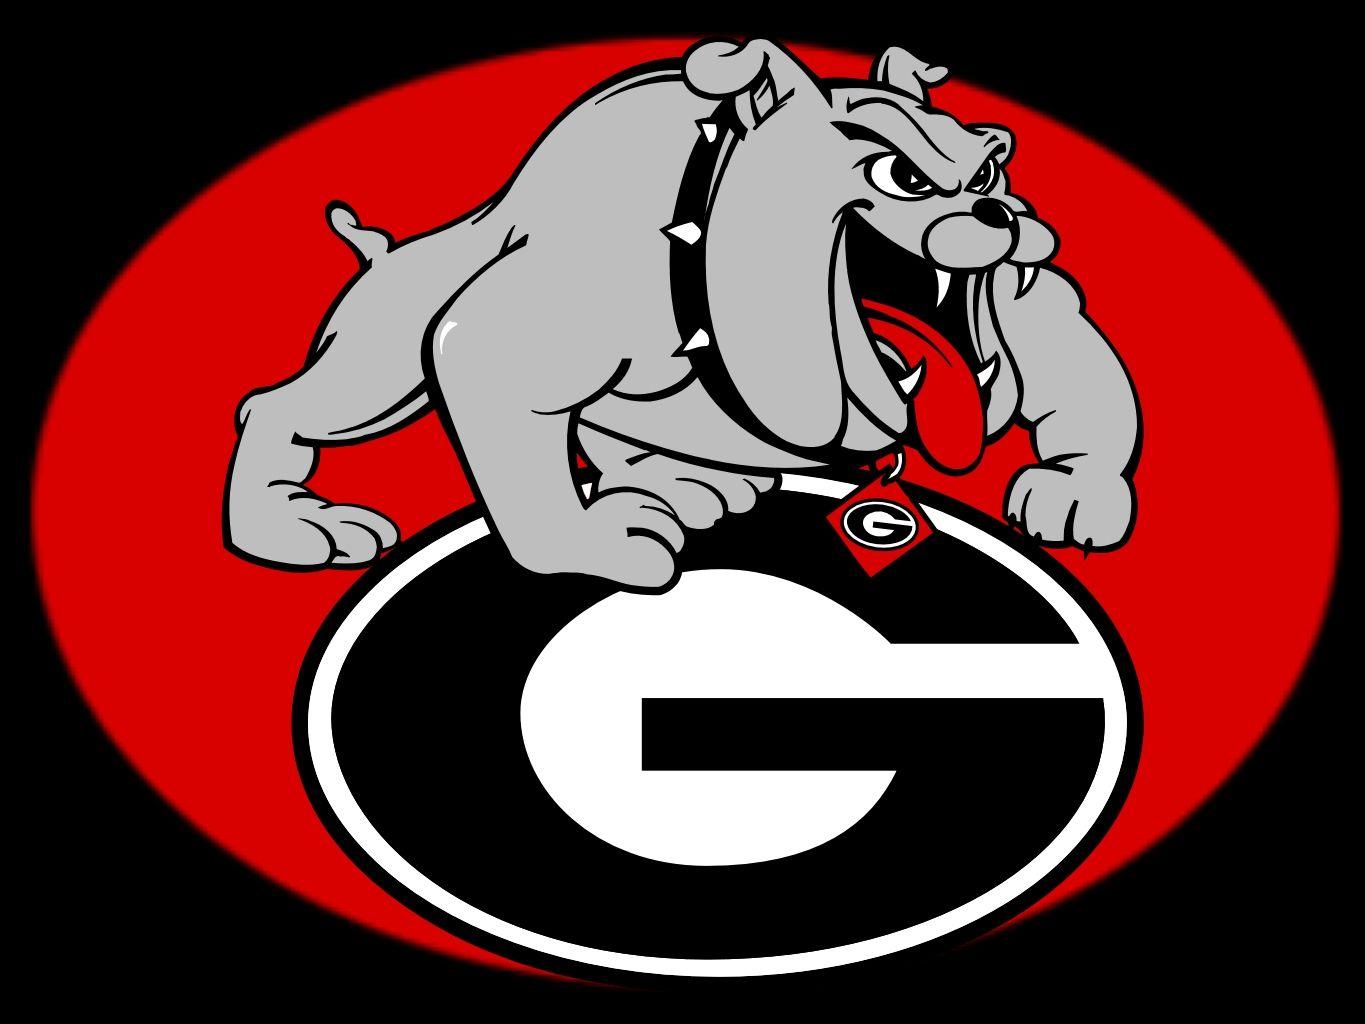 Georgia Bulldogs Image. Georgia Bulldogs. Ideas for the House